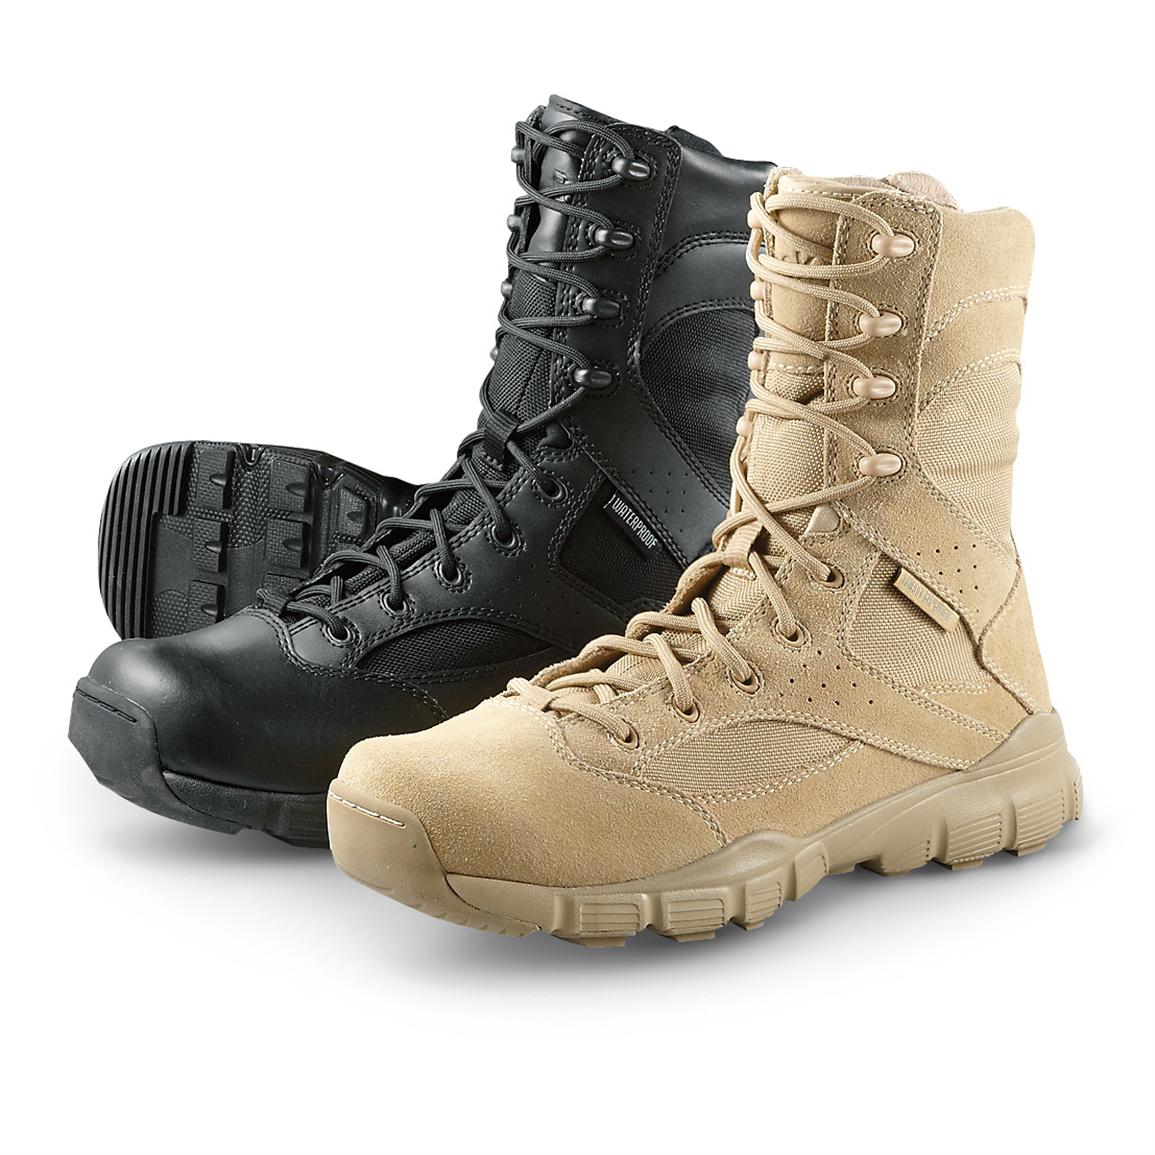 Men's Reebok Dauntless Waterproof Duty Boots - 292716, Tactical Boots ...